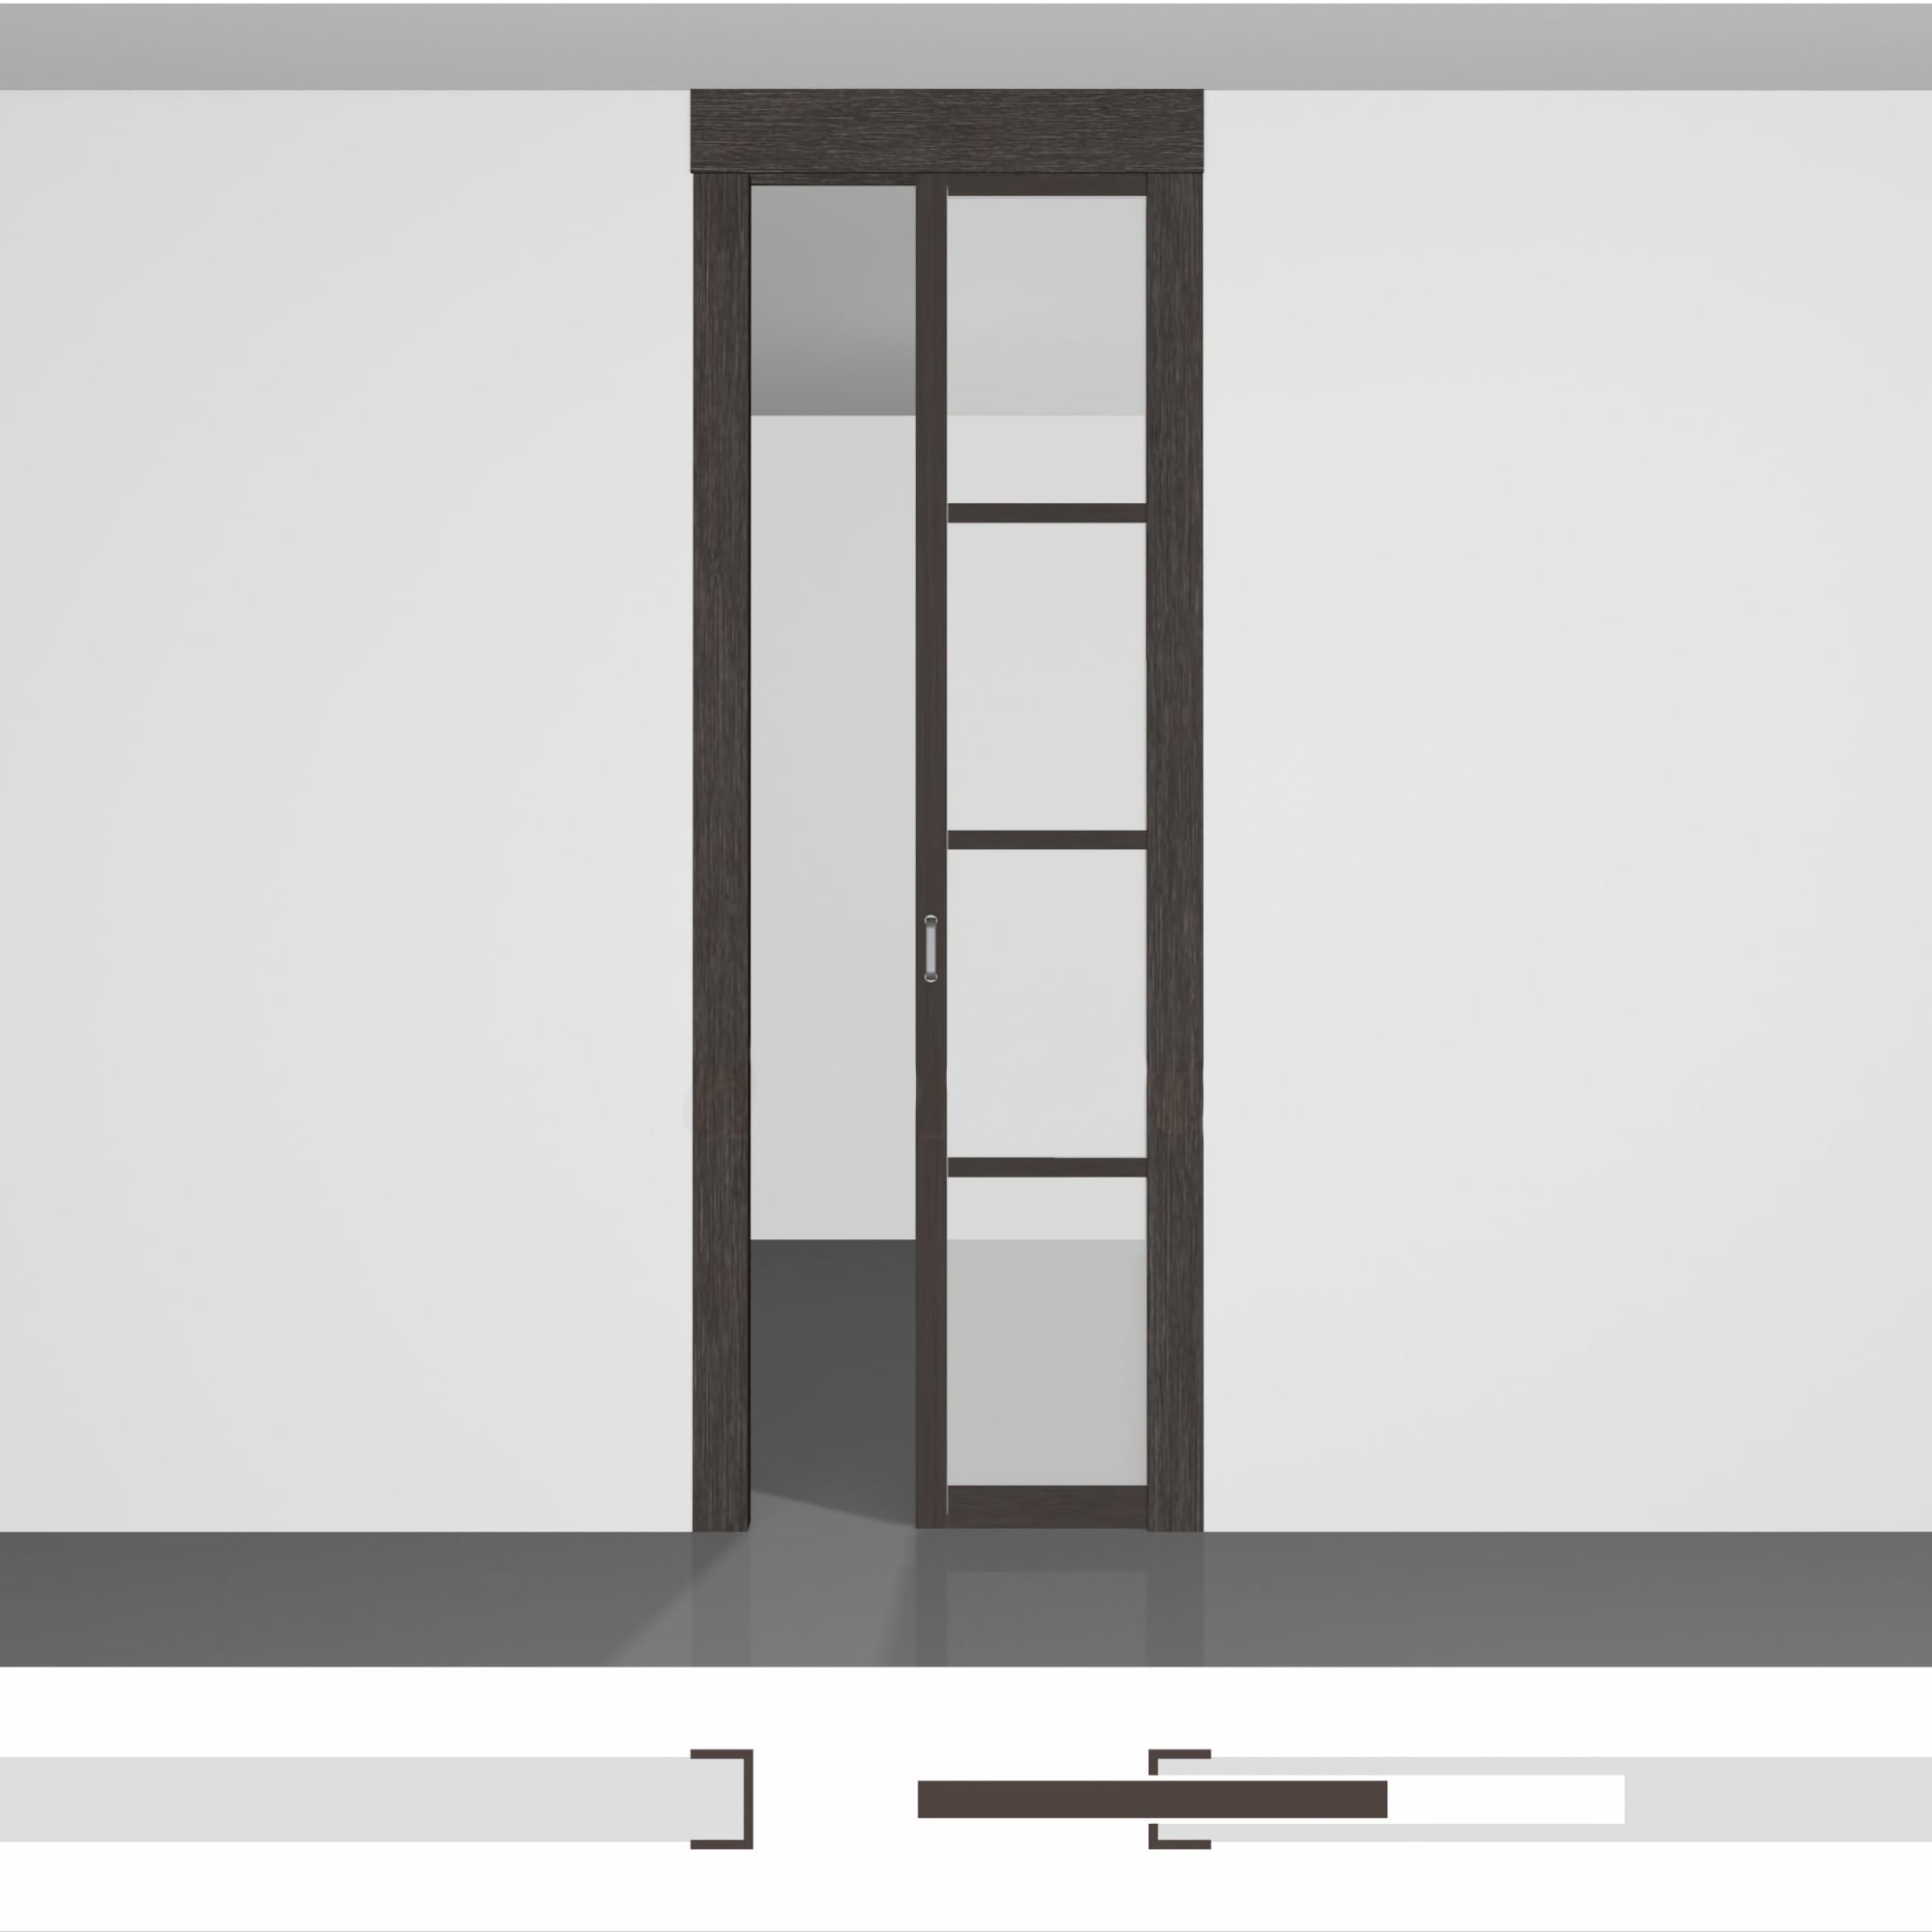 Відсувні міжкімнатні двері - P01.2в • полотно висотою до 2430 мм приховане в стіну